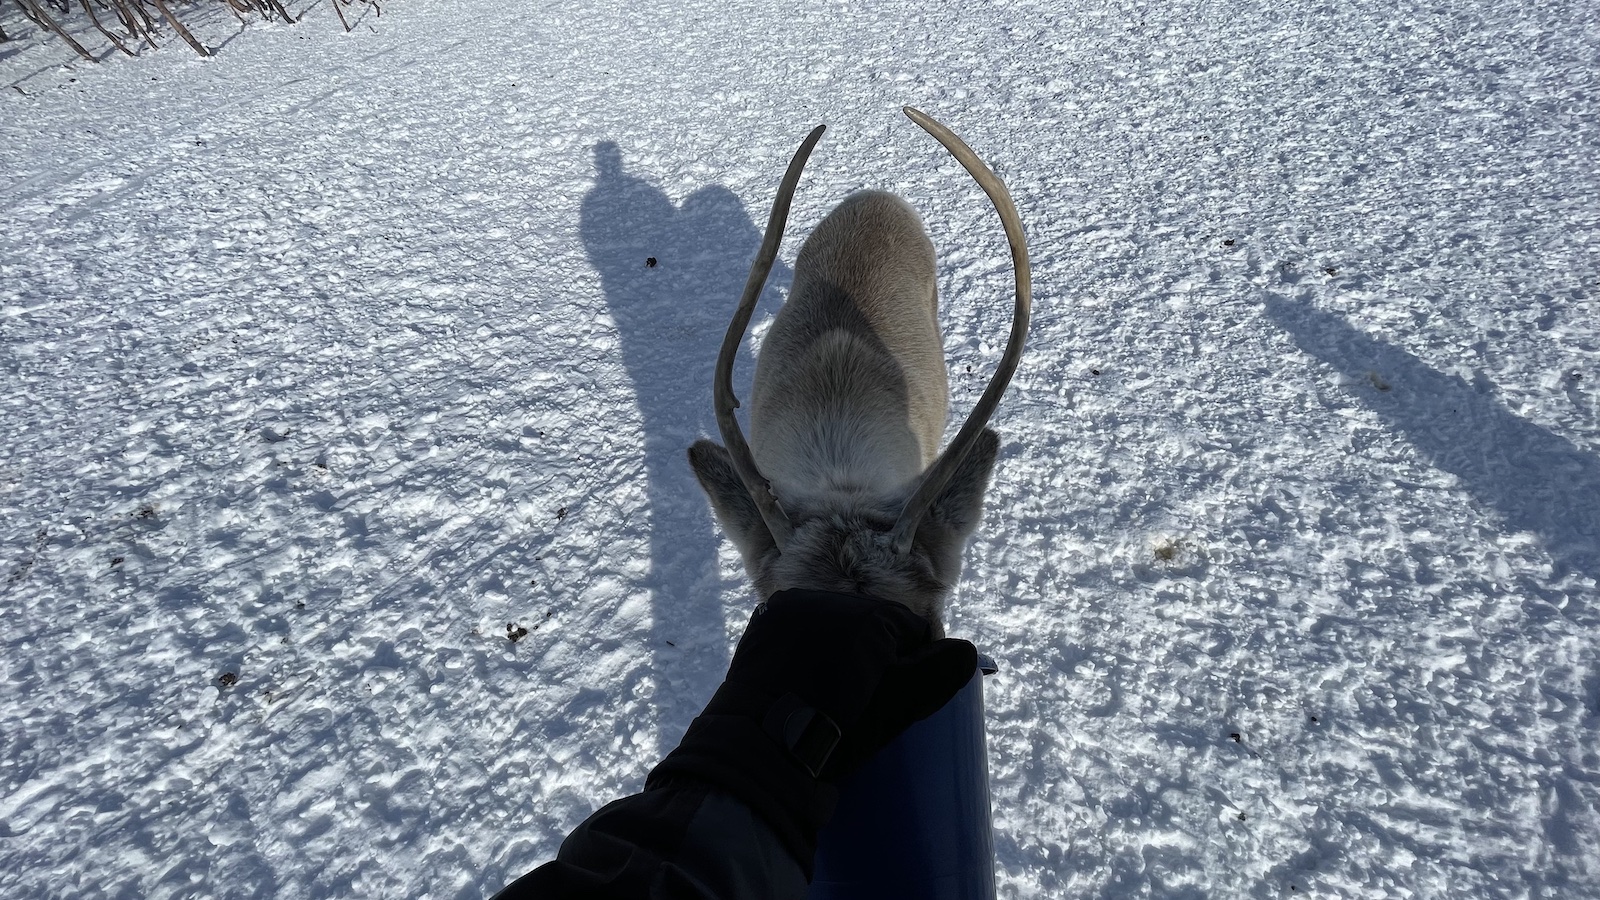 Tromso Reindeer Being Fed